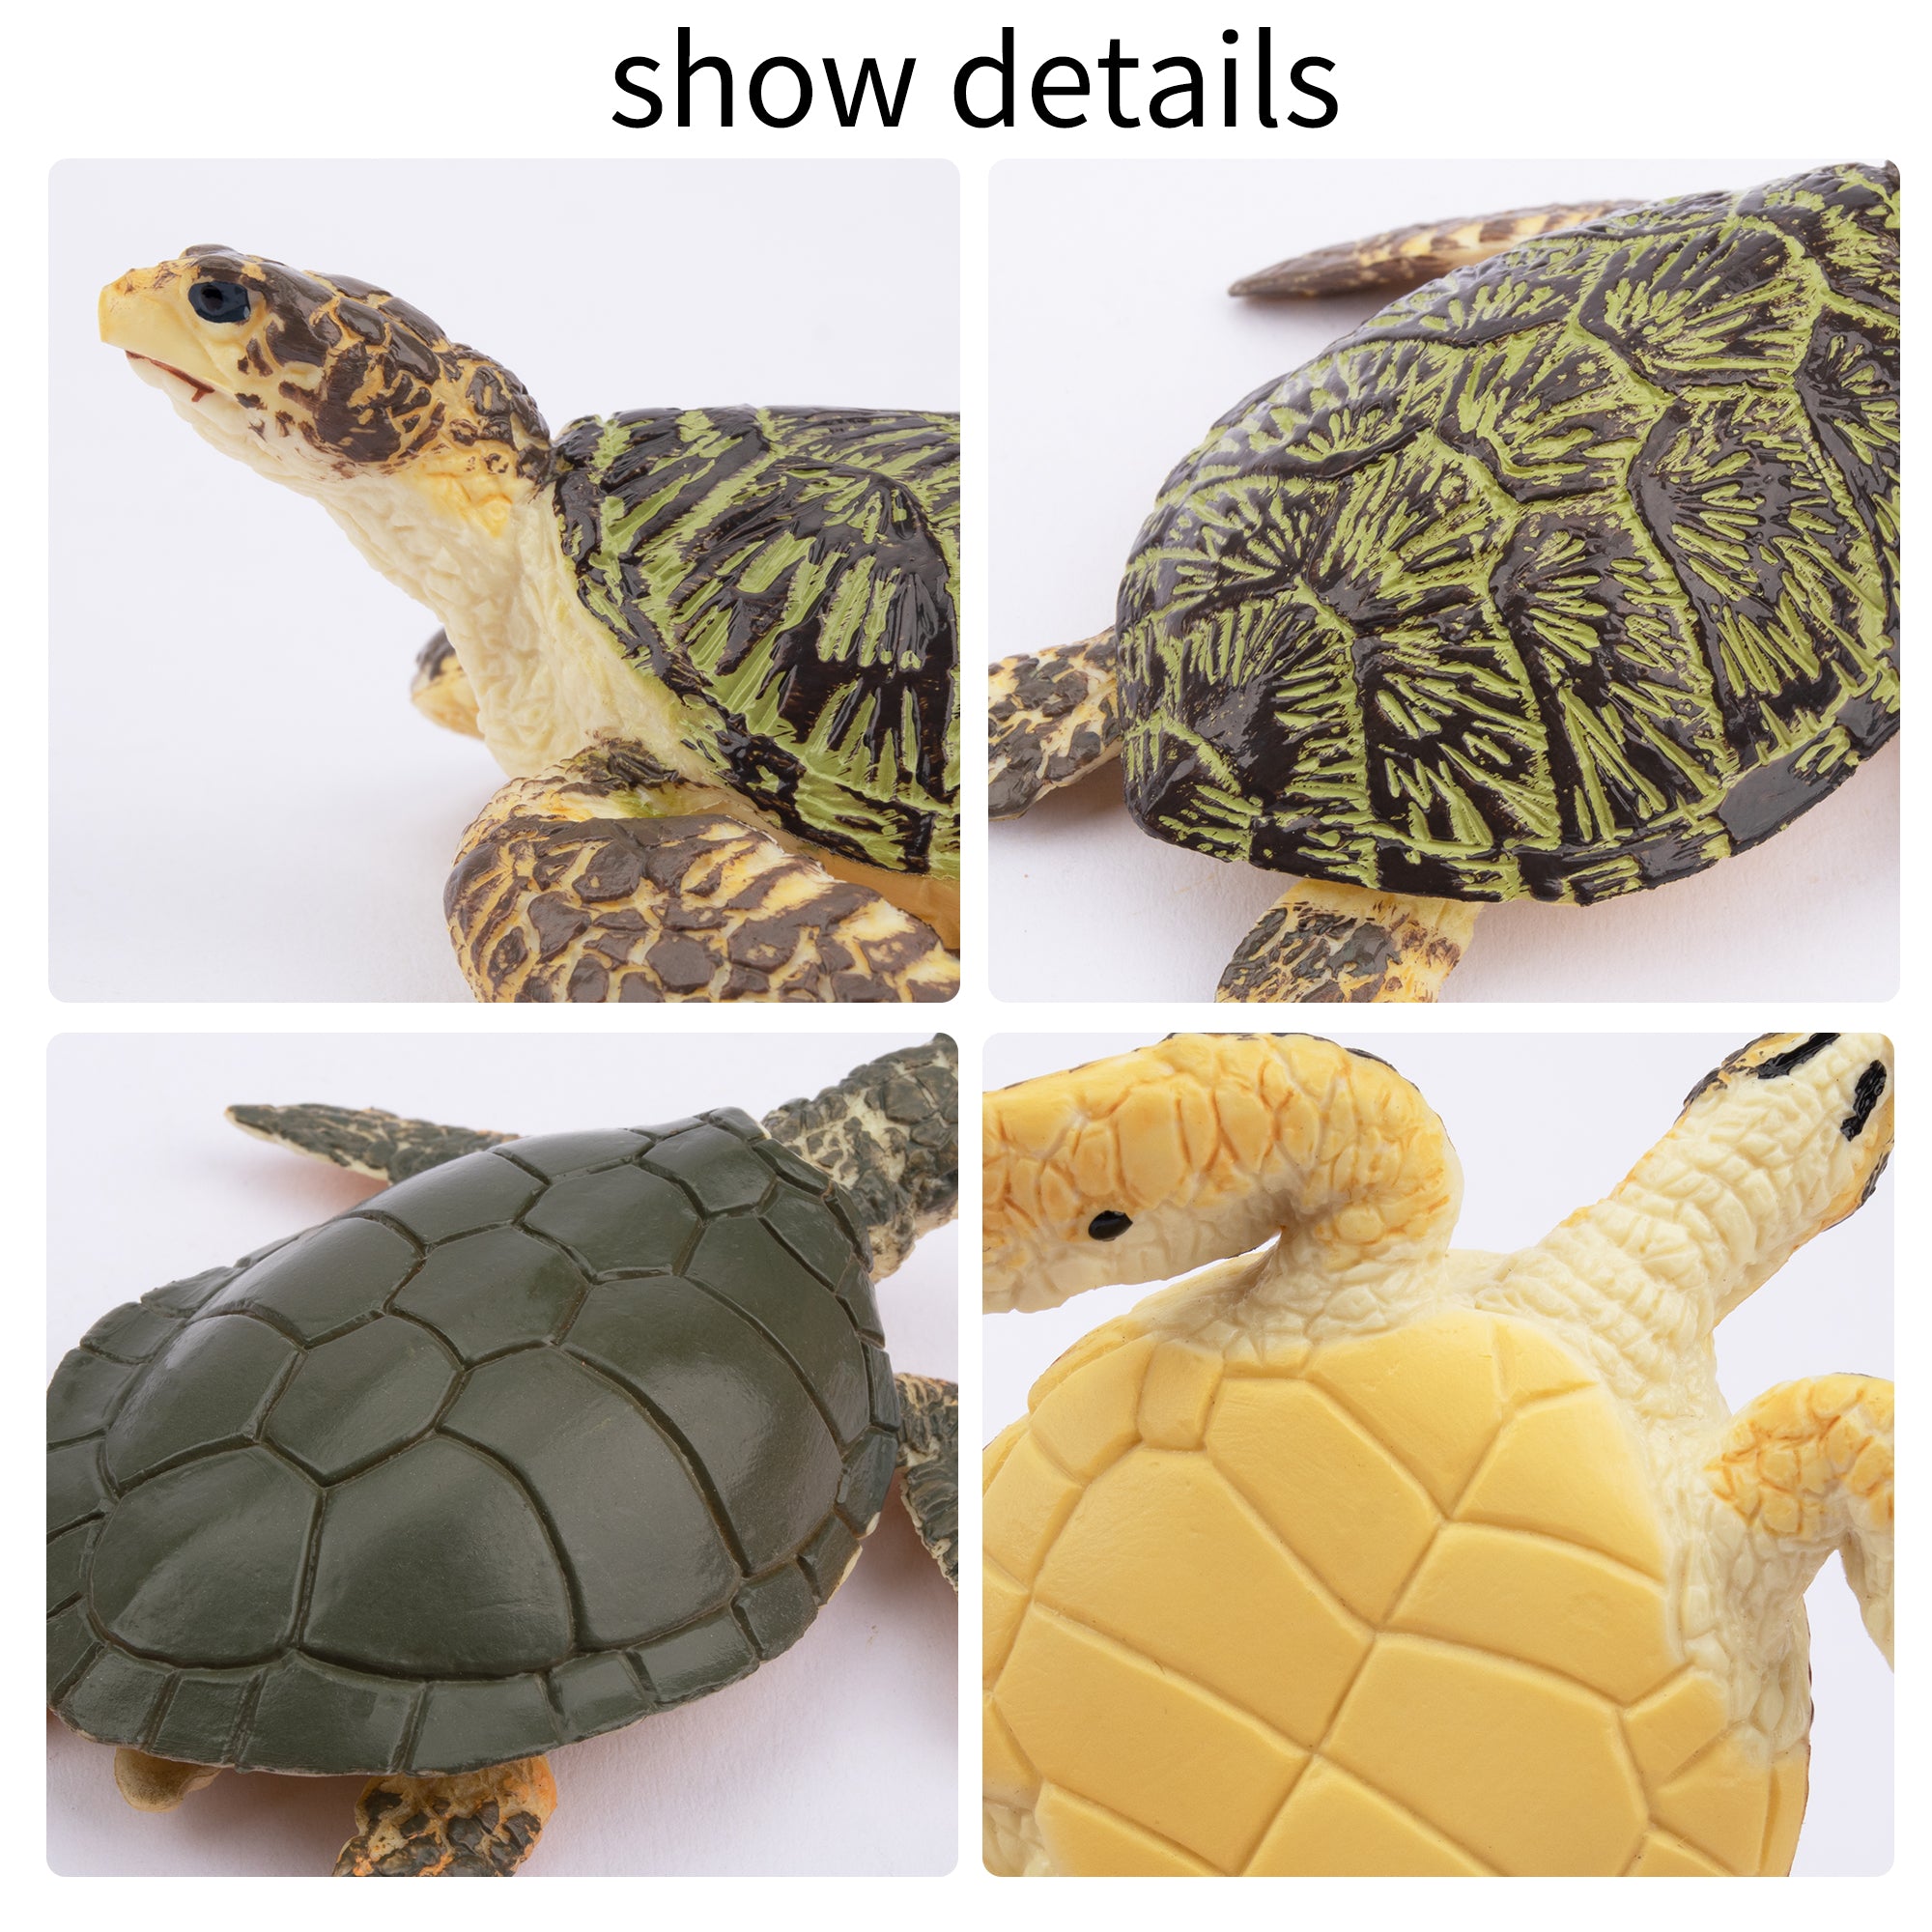 6-Piece Sea Turtle Animal Figurines Playset-detail